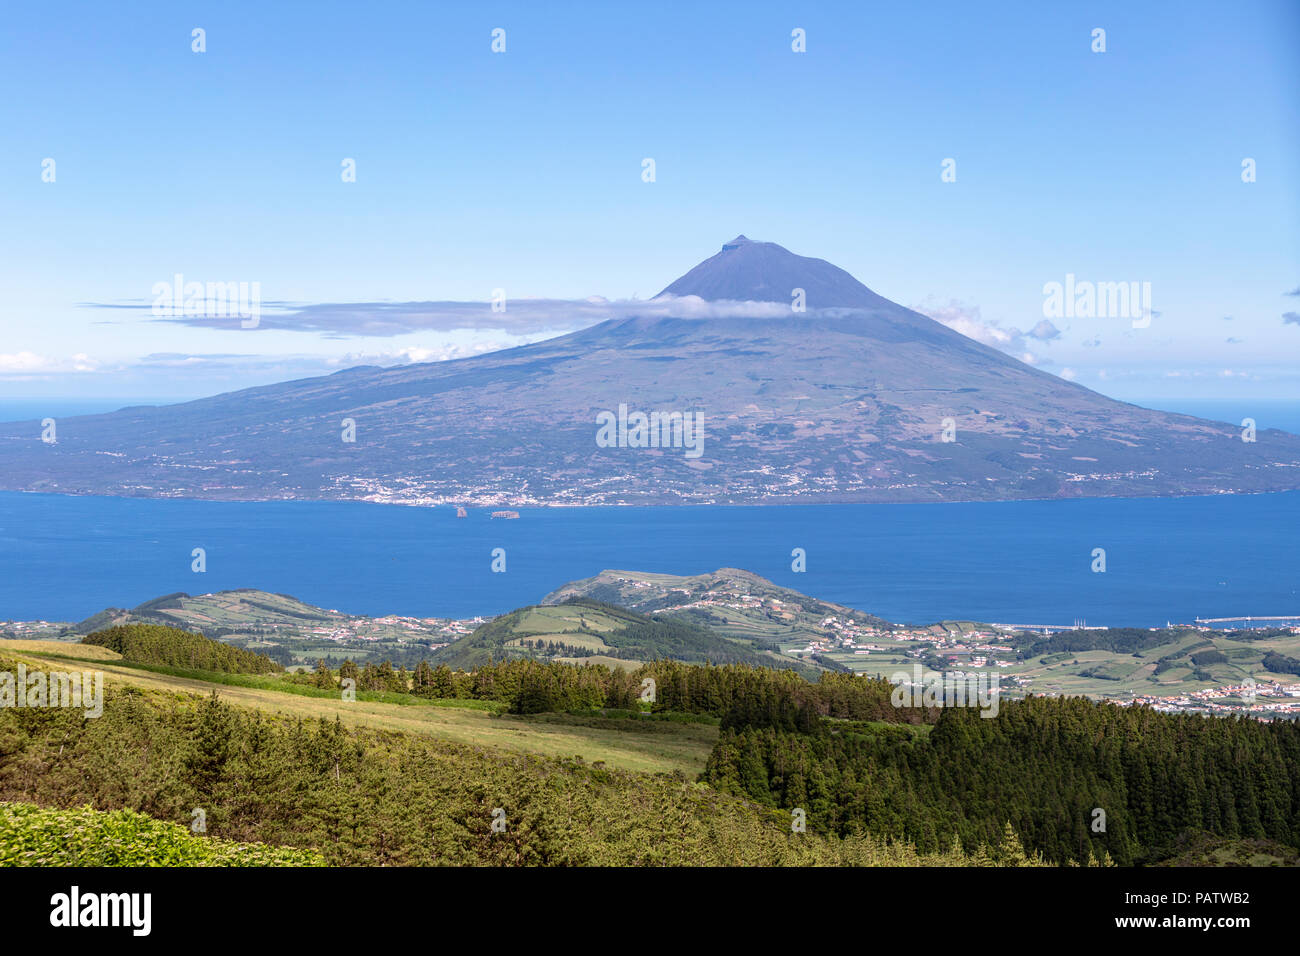 Den Berg Pico von Insel Faial, Azoren, Portugal Stockfoto